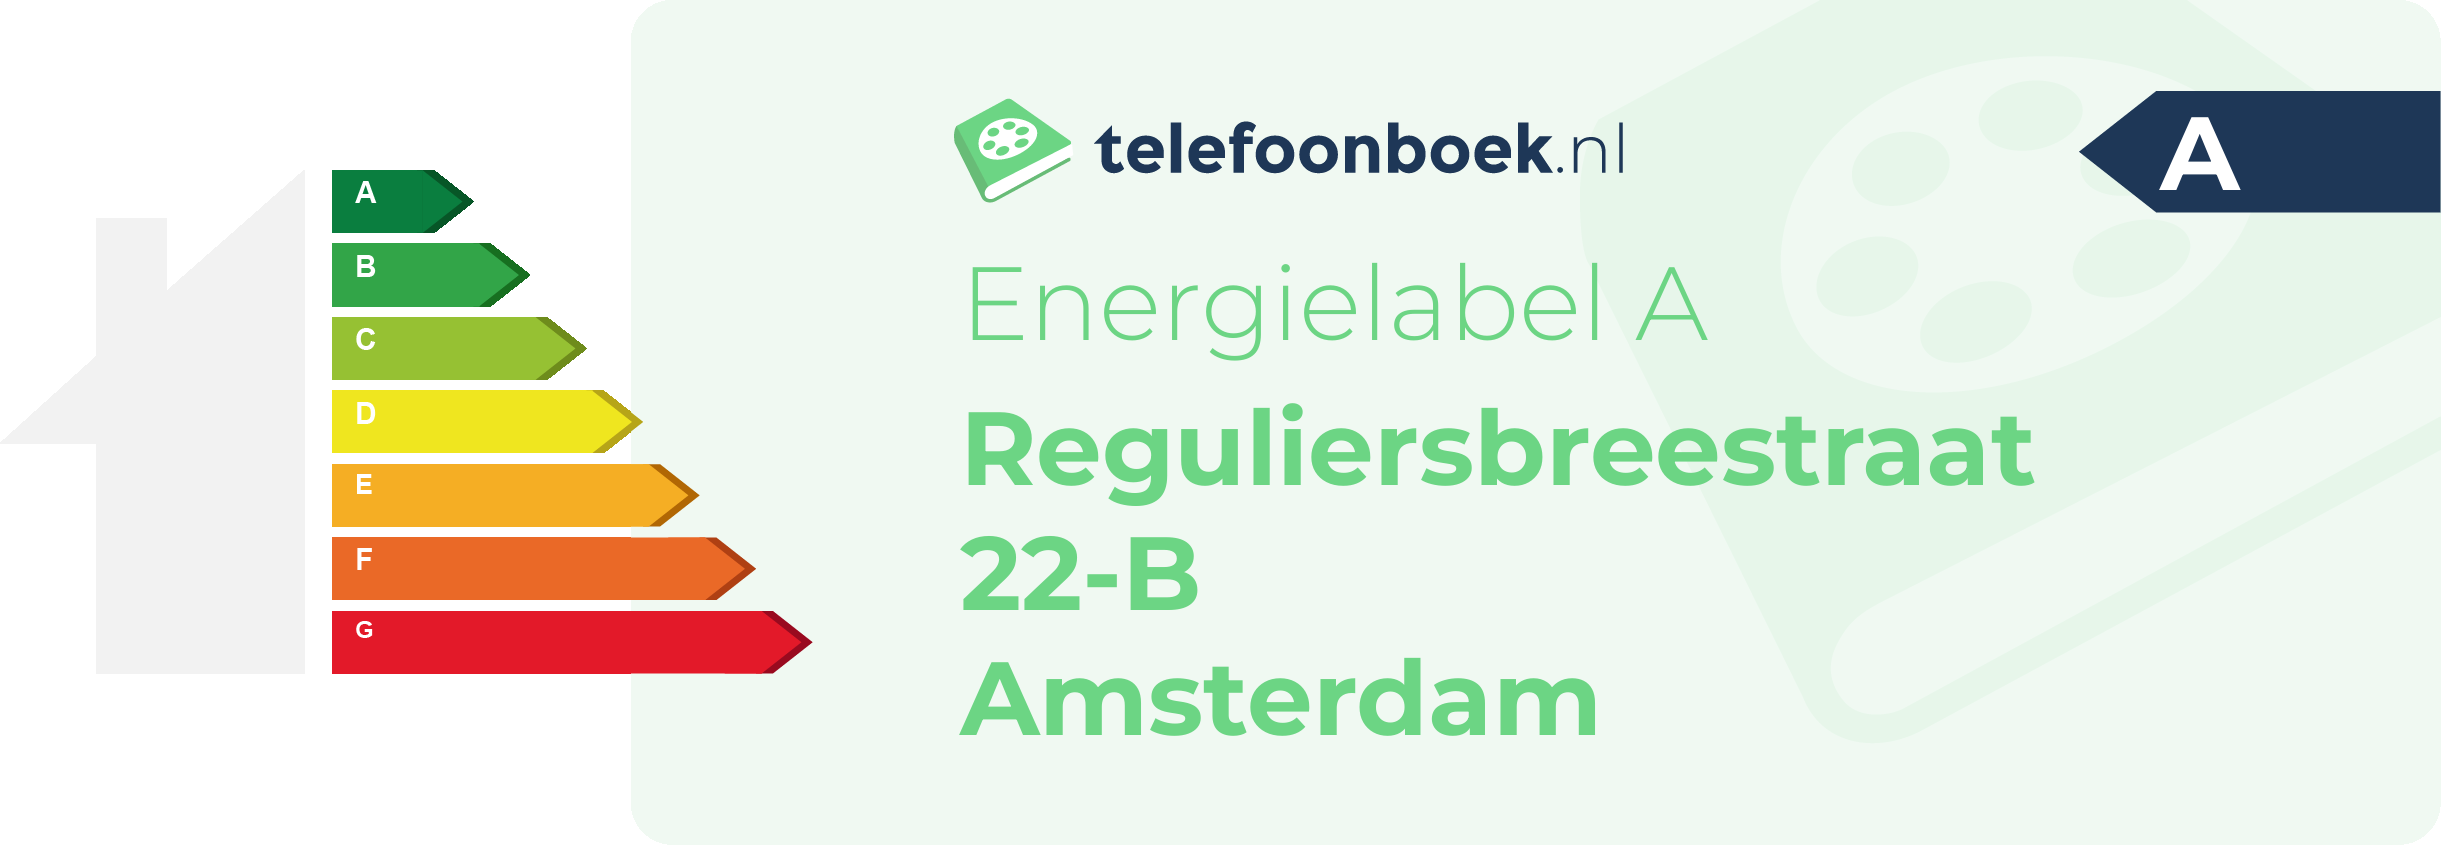 Energielabel Reguliersbreestraat 22-B Amsterdam